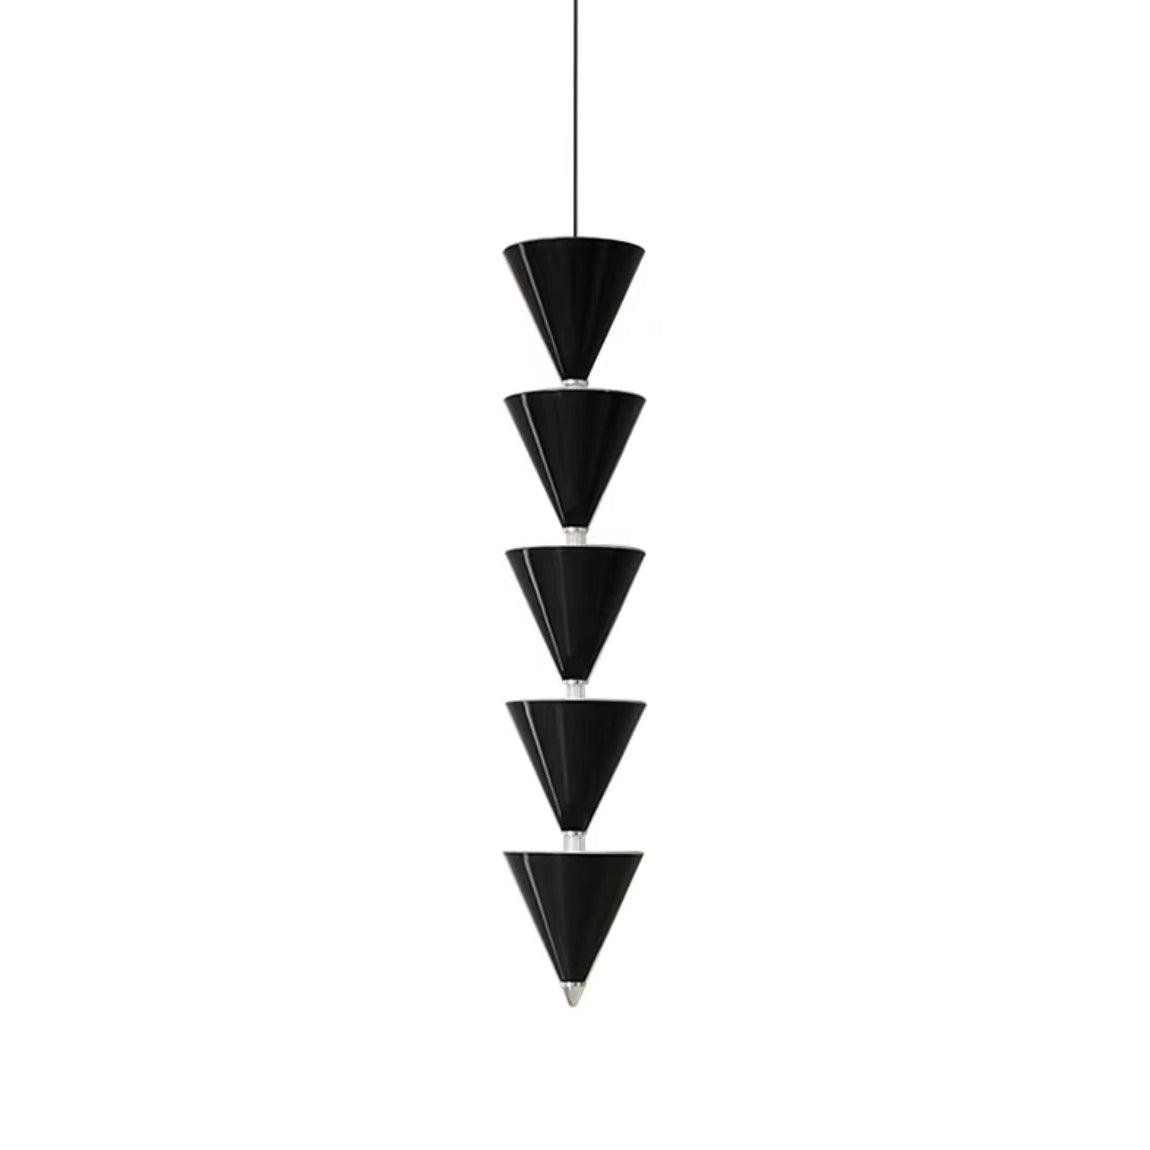 Legato Pendant Light ∅ 6.7″ x H 33.5″ , Dia 17cm x H 85cm , Black , Cool Light